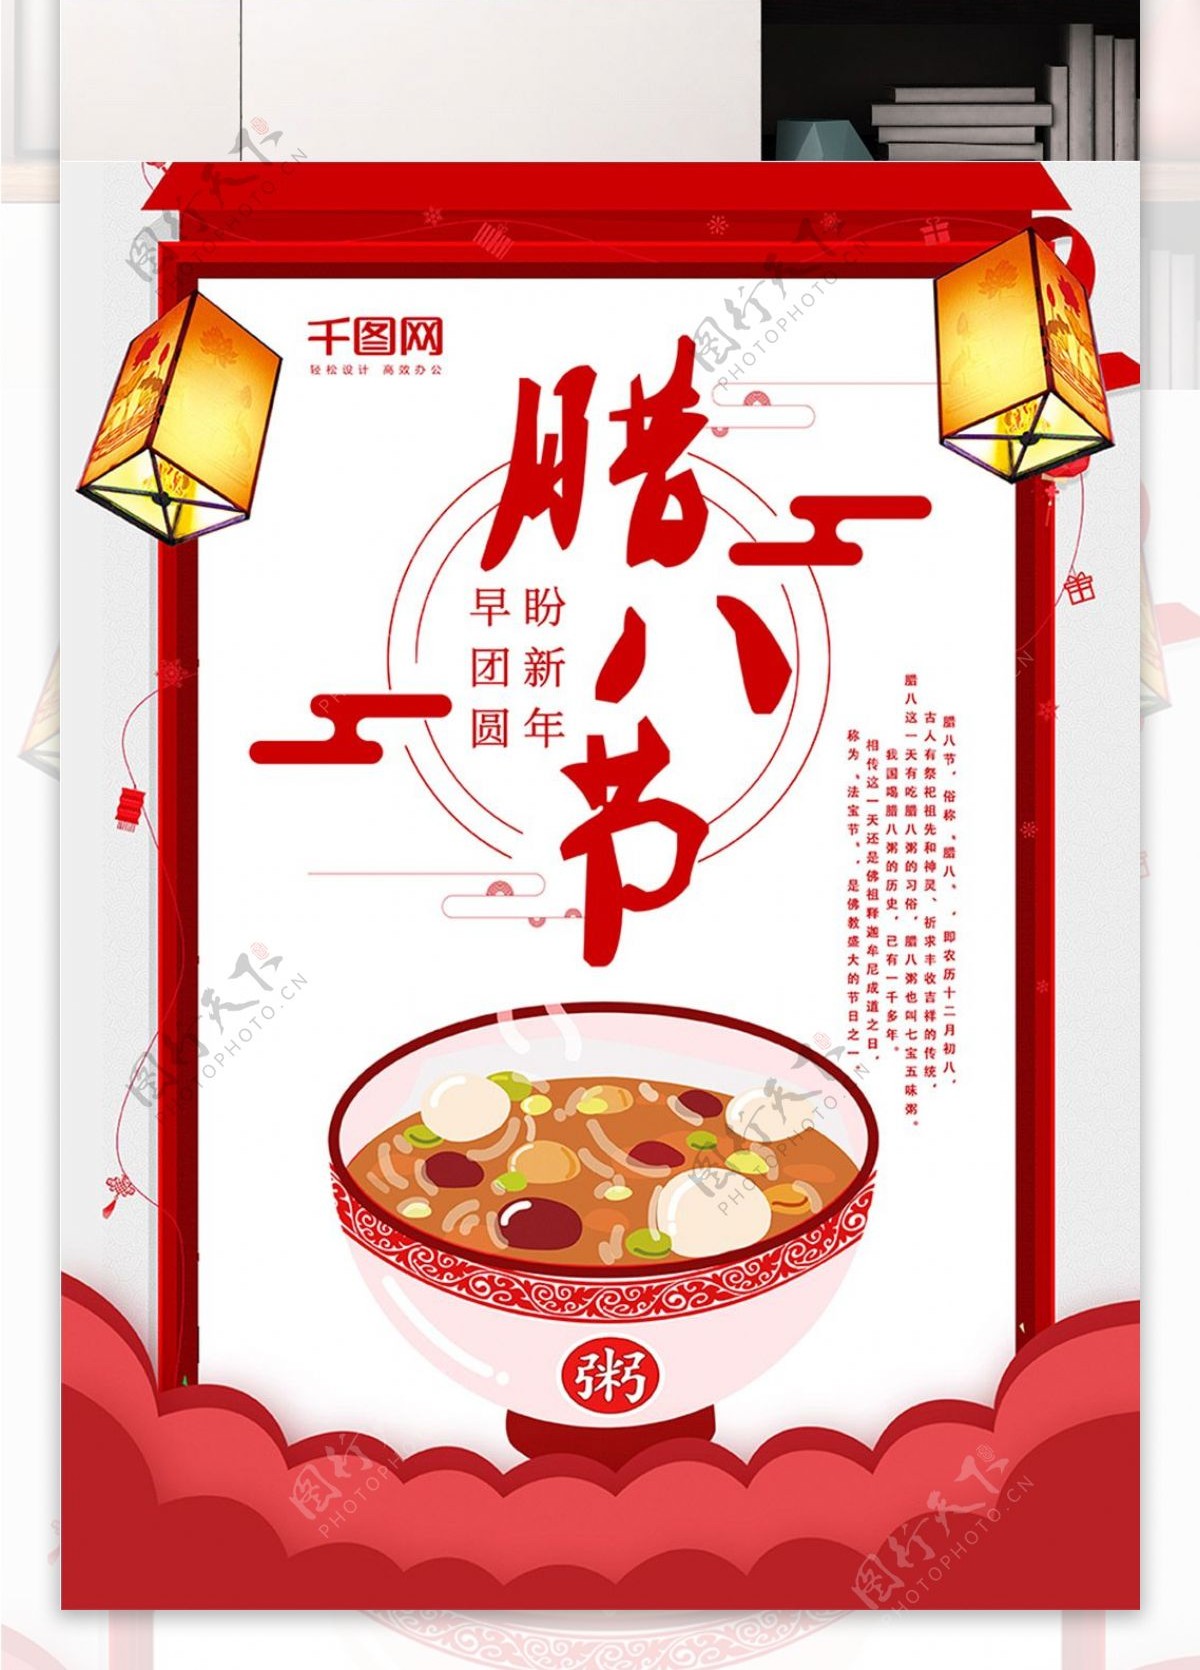 中国风中国传统节日腊八节海报设计